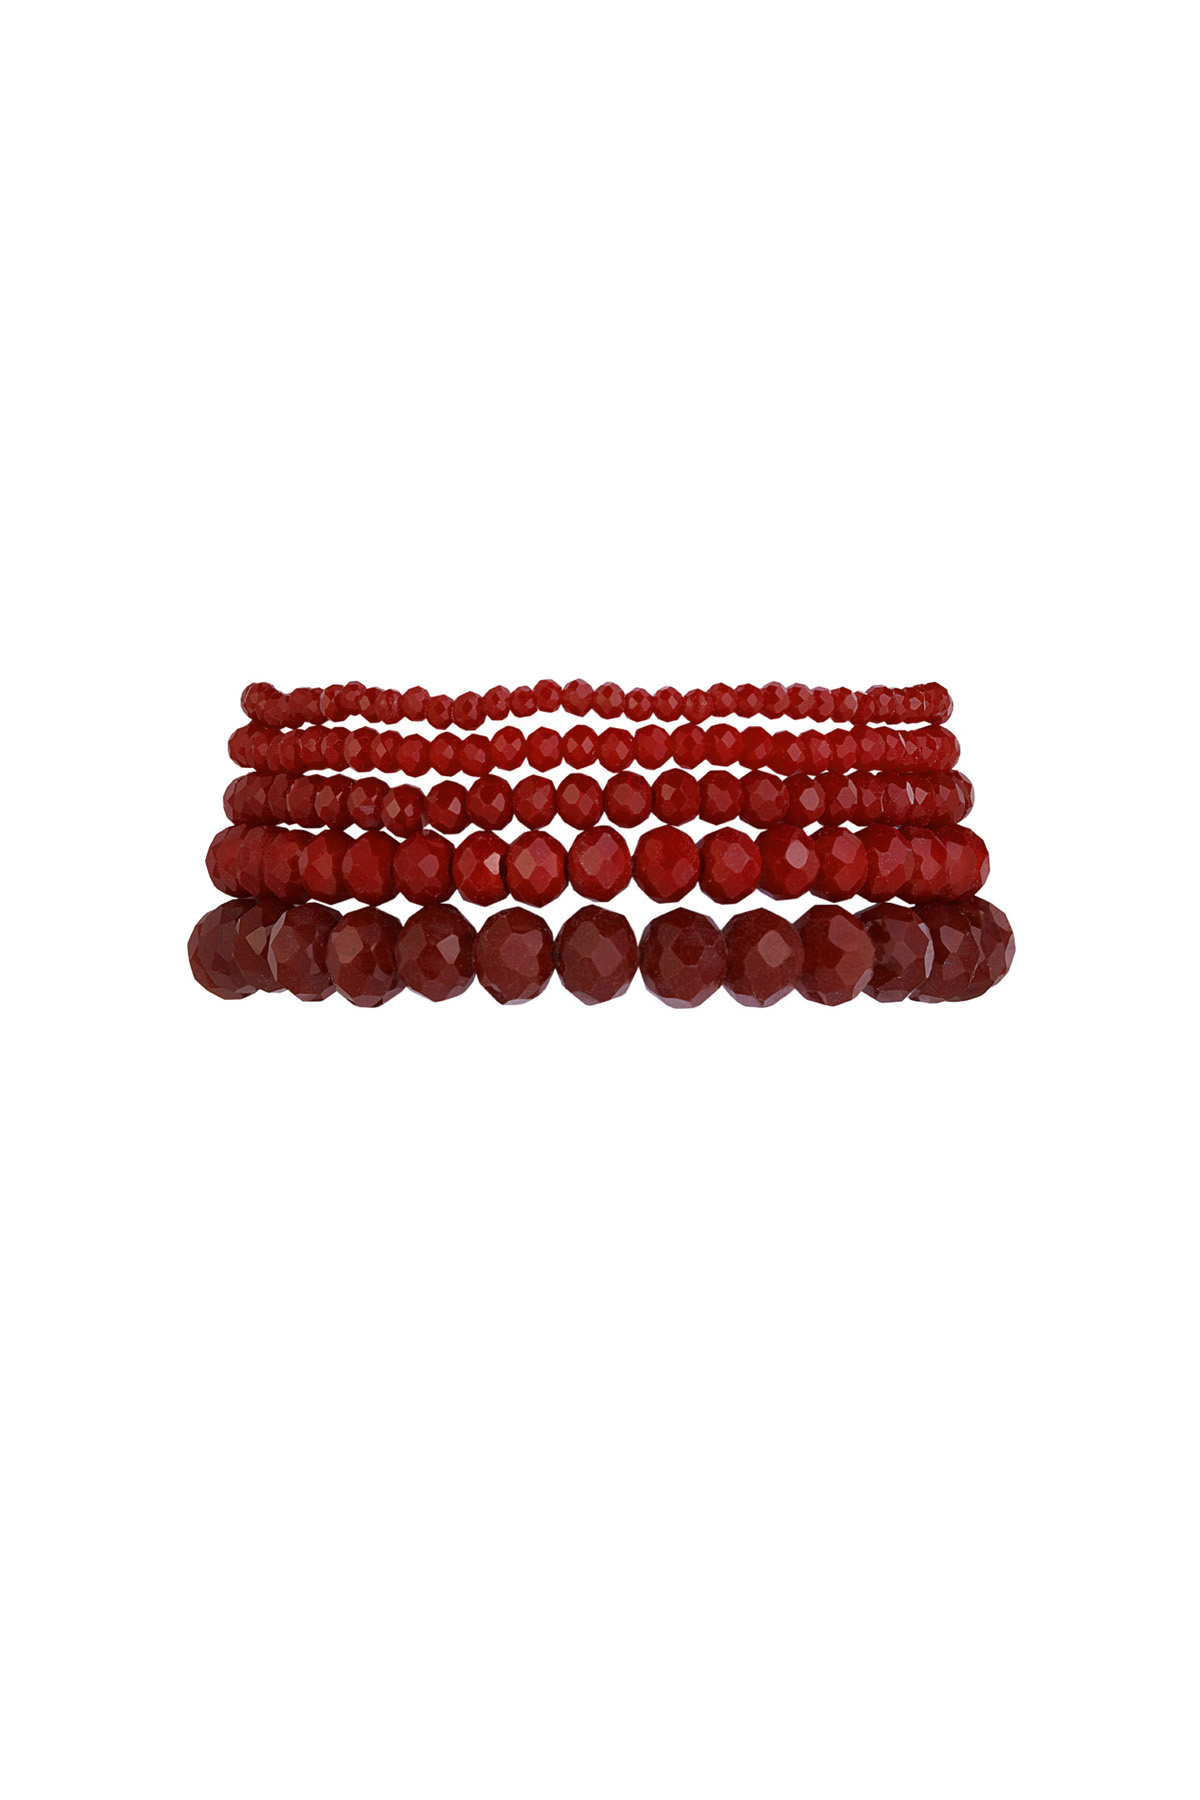 Set of 5 crystal bracelets - wine red h5 